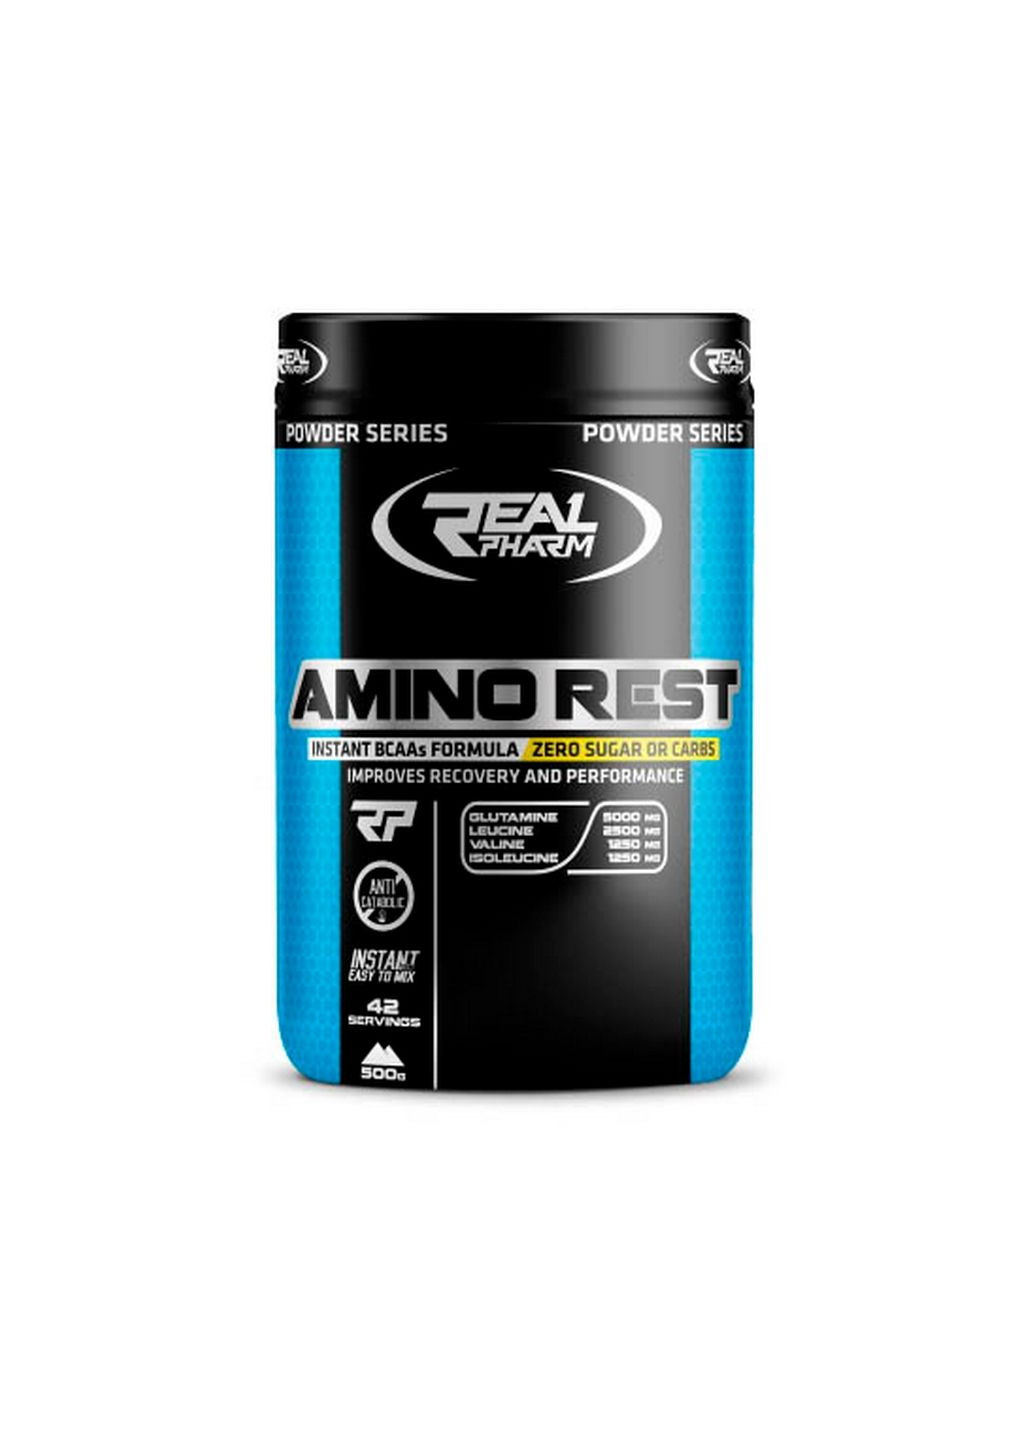 Аминокислота Amino Rest, 500 грамм Апельсин Real Pharm (293337976)